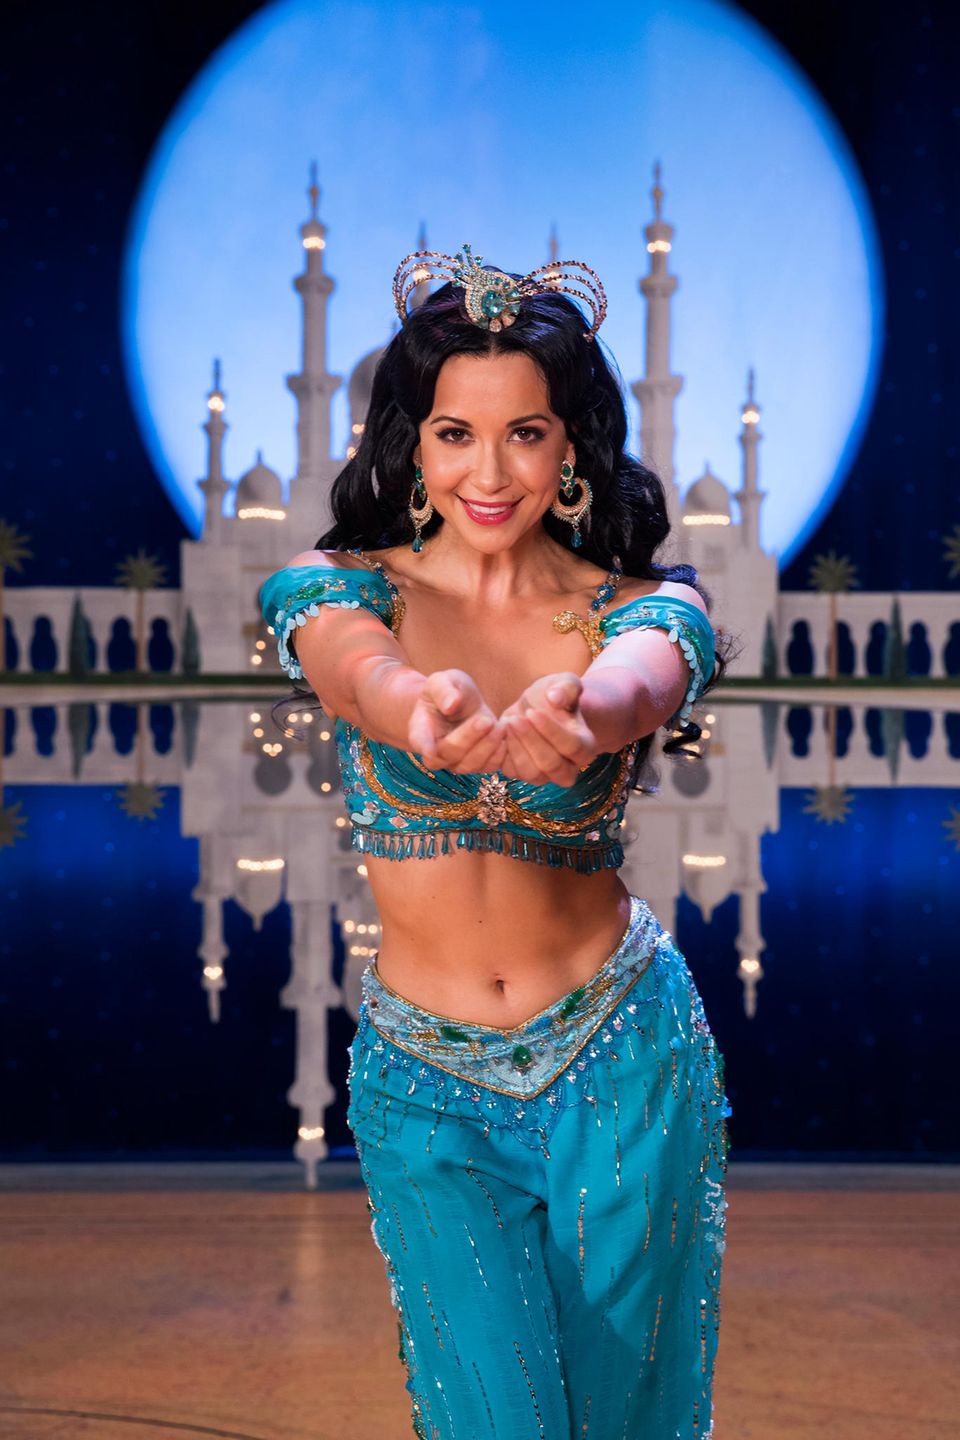 Die Sängerin Mandy Grace Capristo übernimmt ab dem 21. September für 20 Vorstellungen von Myrthes Monteiro die Rolle der Prinzessin Jasmin im Disney- Musical Aladdin im Theater Neue Flora in Hamburg.